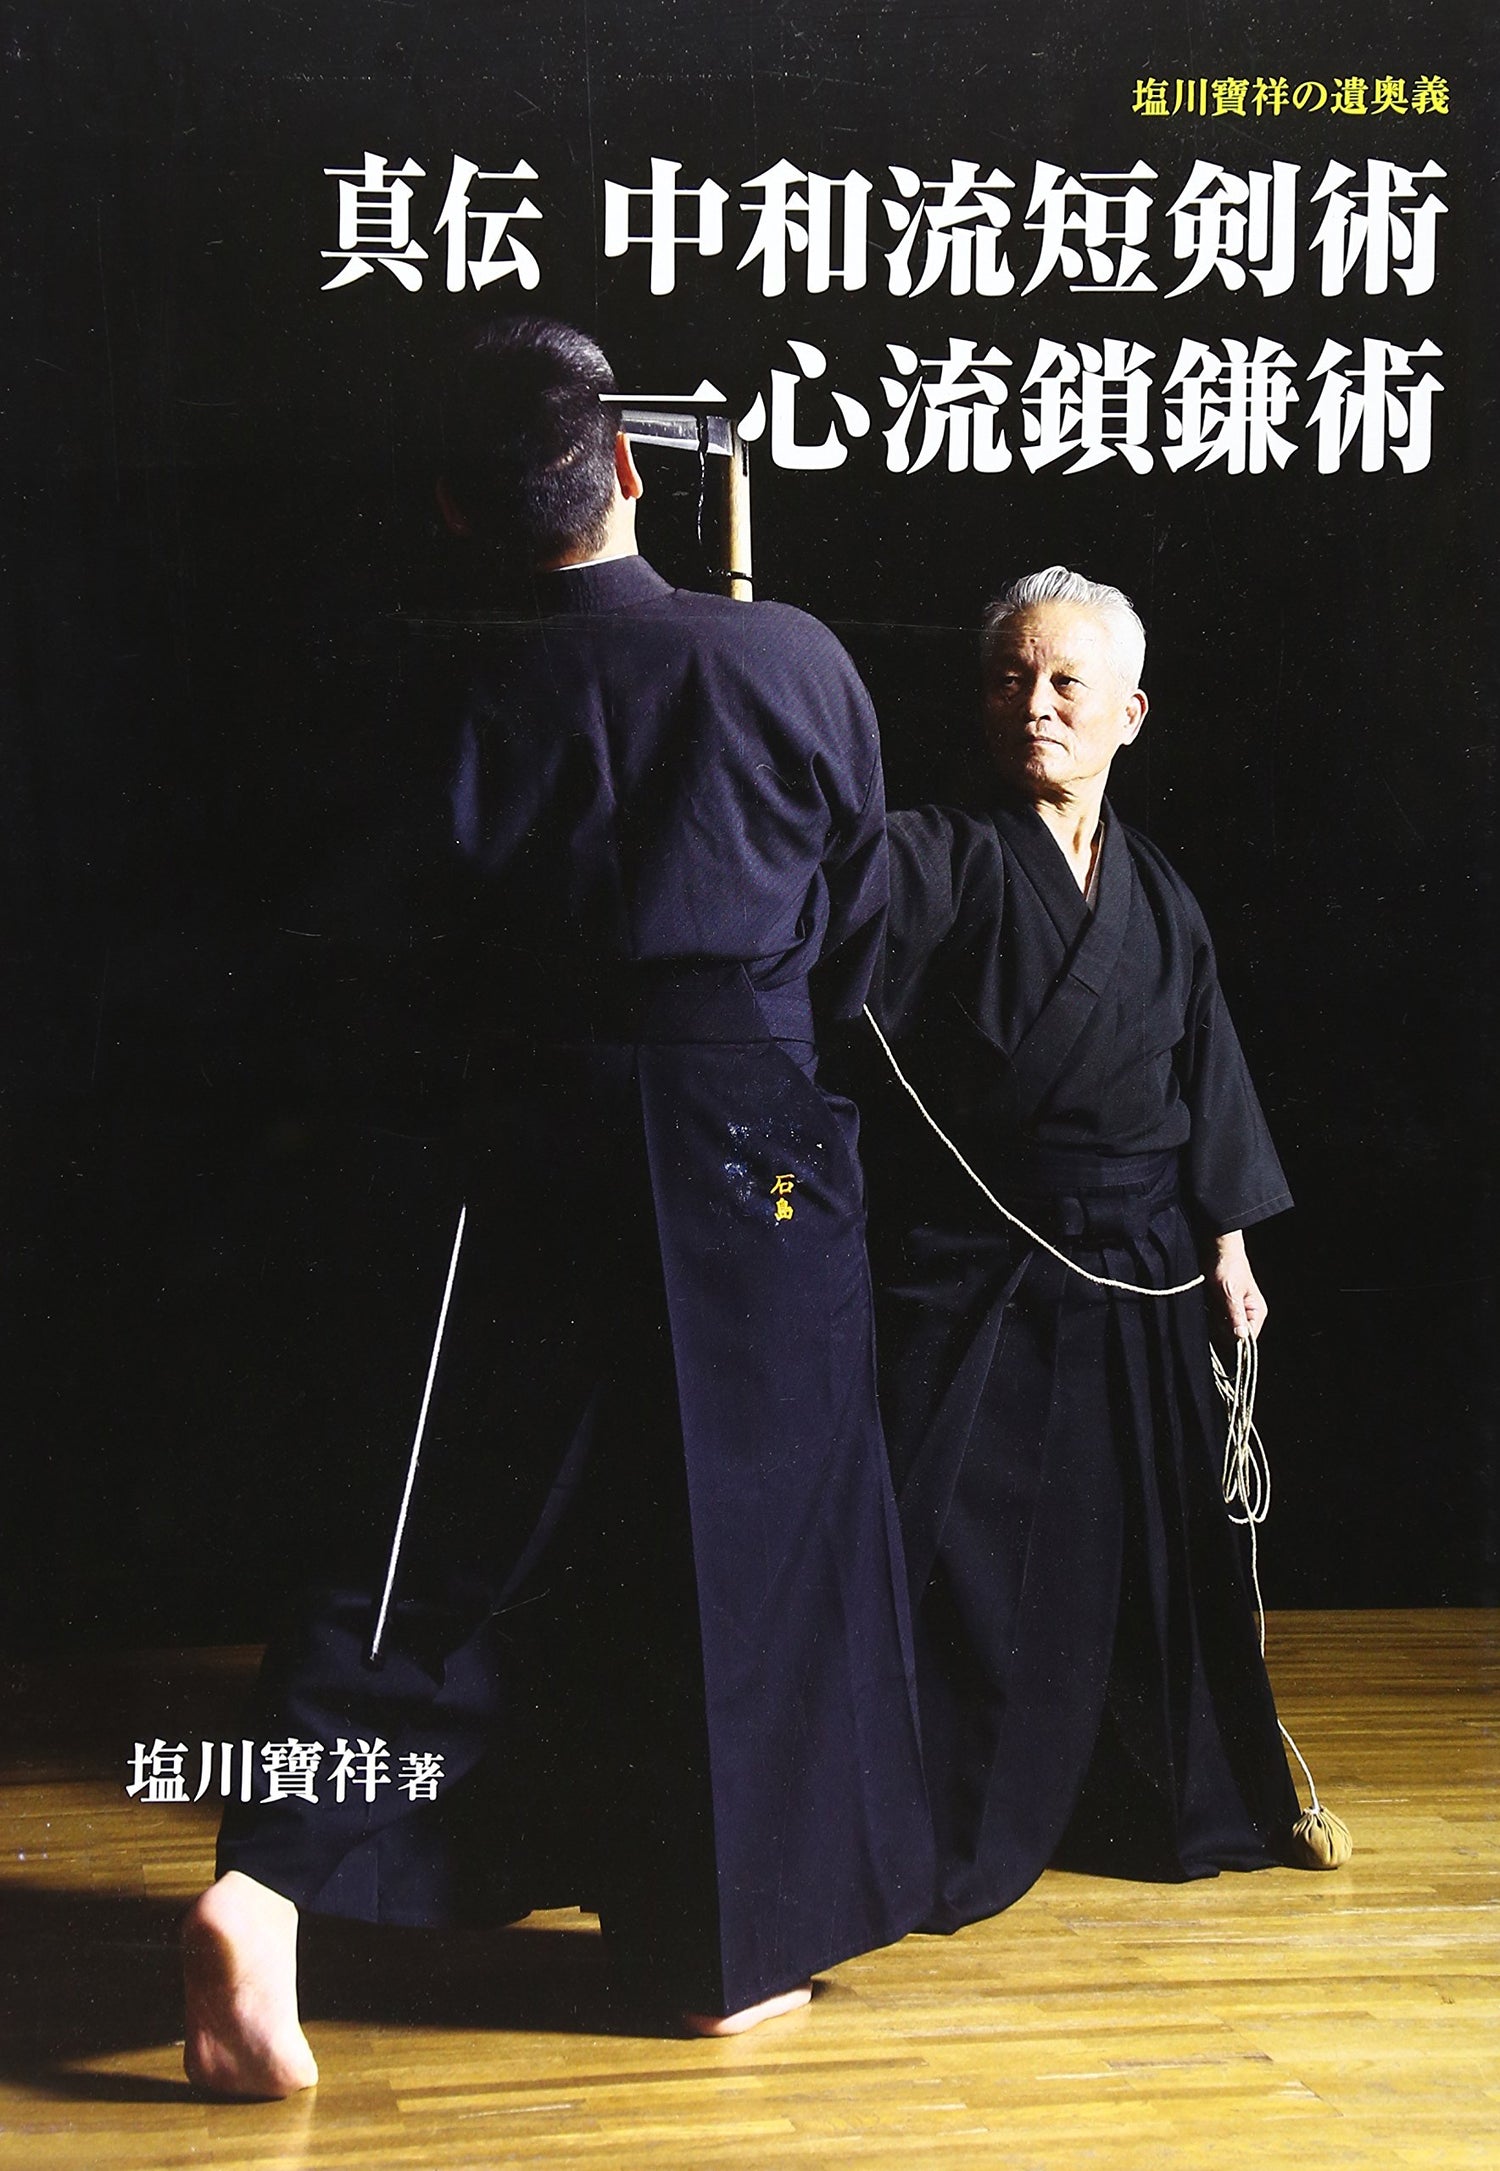 Shinden Chuwa Ryu Tankenjutsu & Kusarigamajutsu Book (Hardcover) Book by Hosho Shiokawa (Preowned) - Budovideos